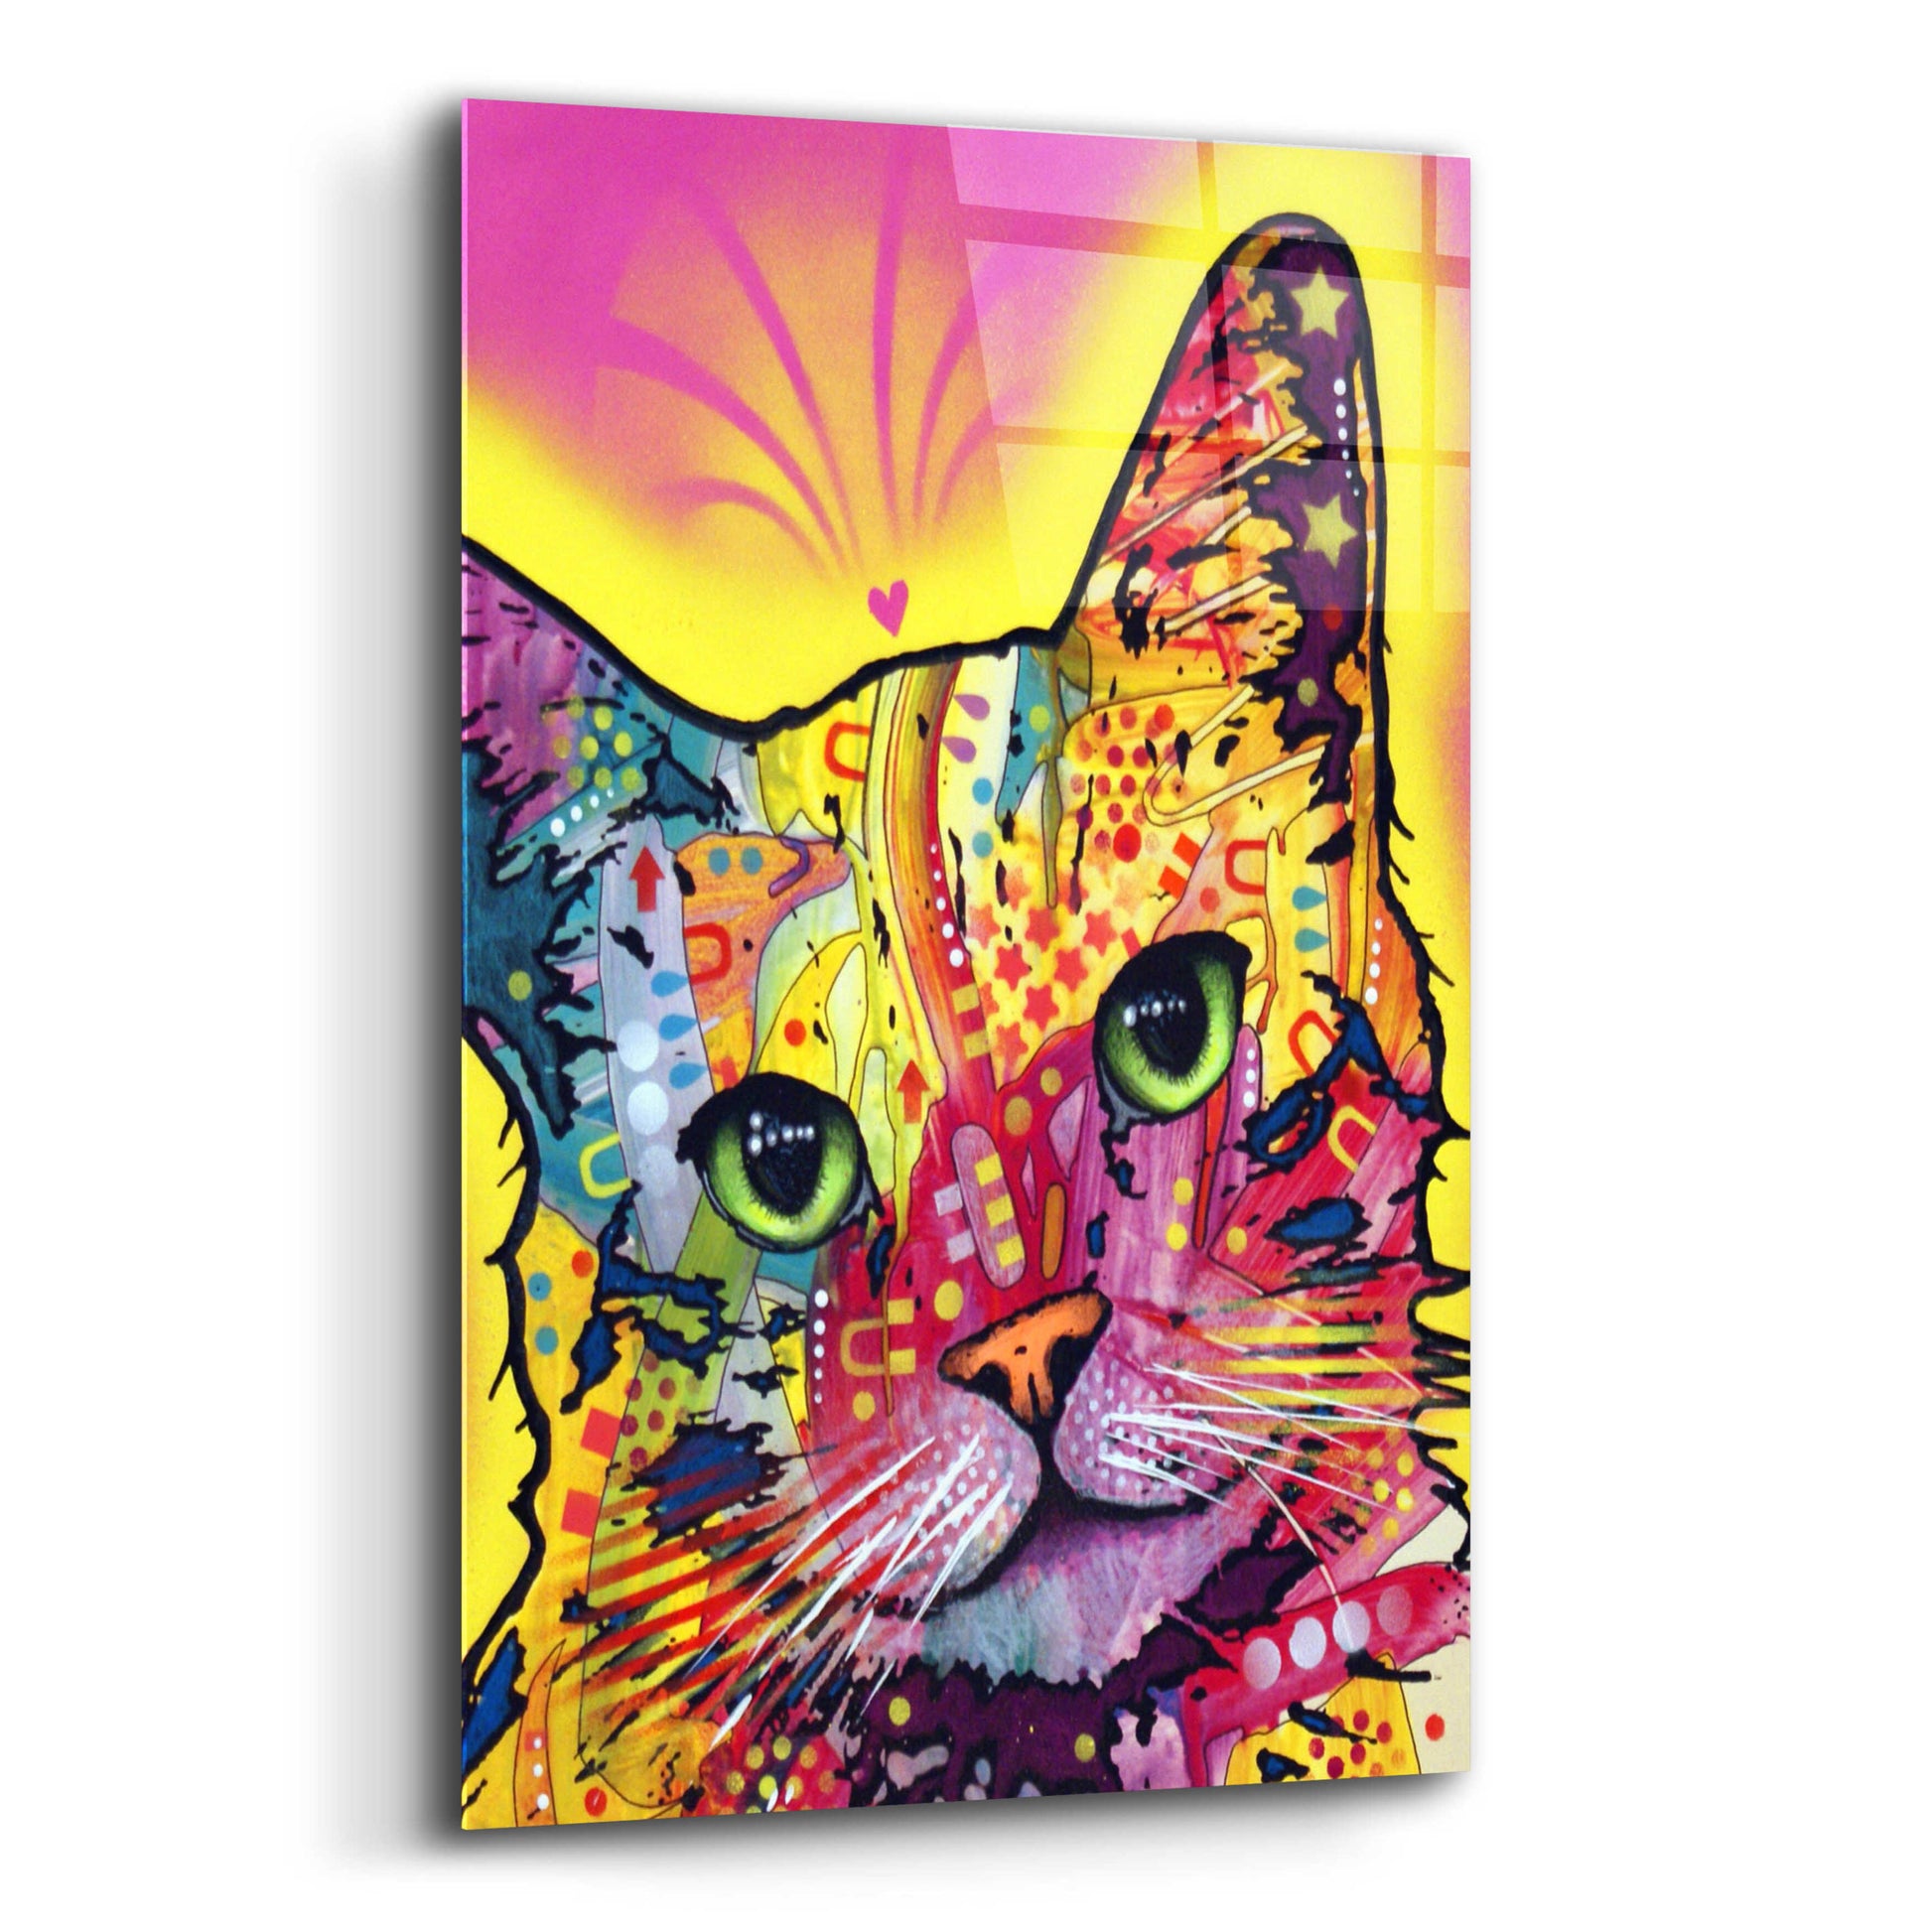 Epic Art 'Tilt Cat I' by Dean Russo, Acrylic Glass Wall Art,12x16